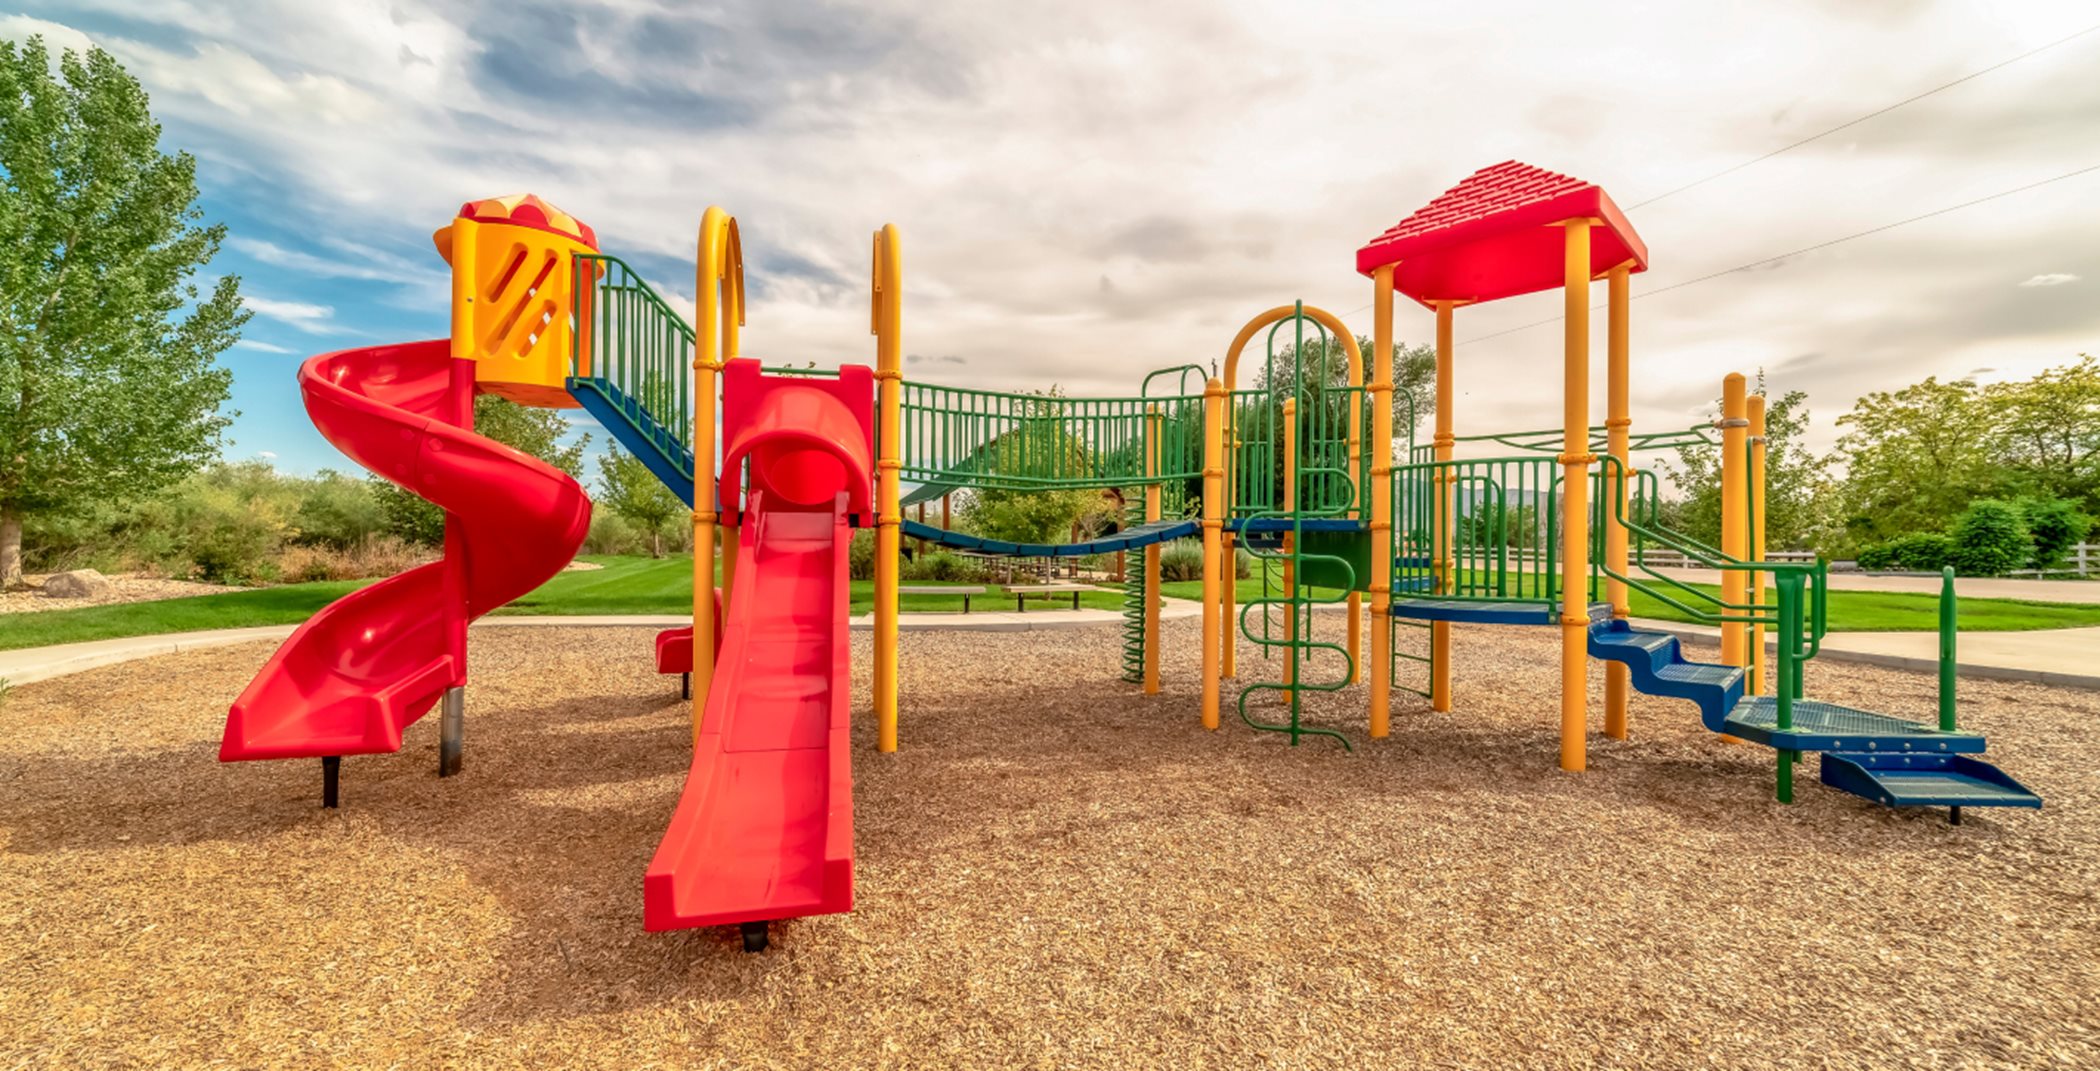 Almond Grove Park’s playground